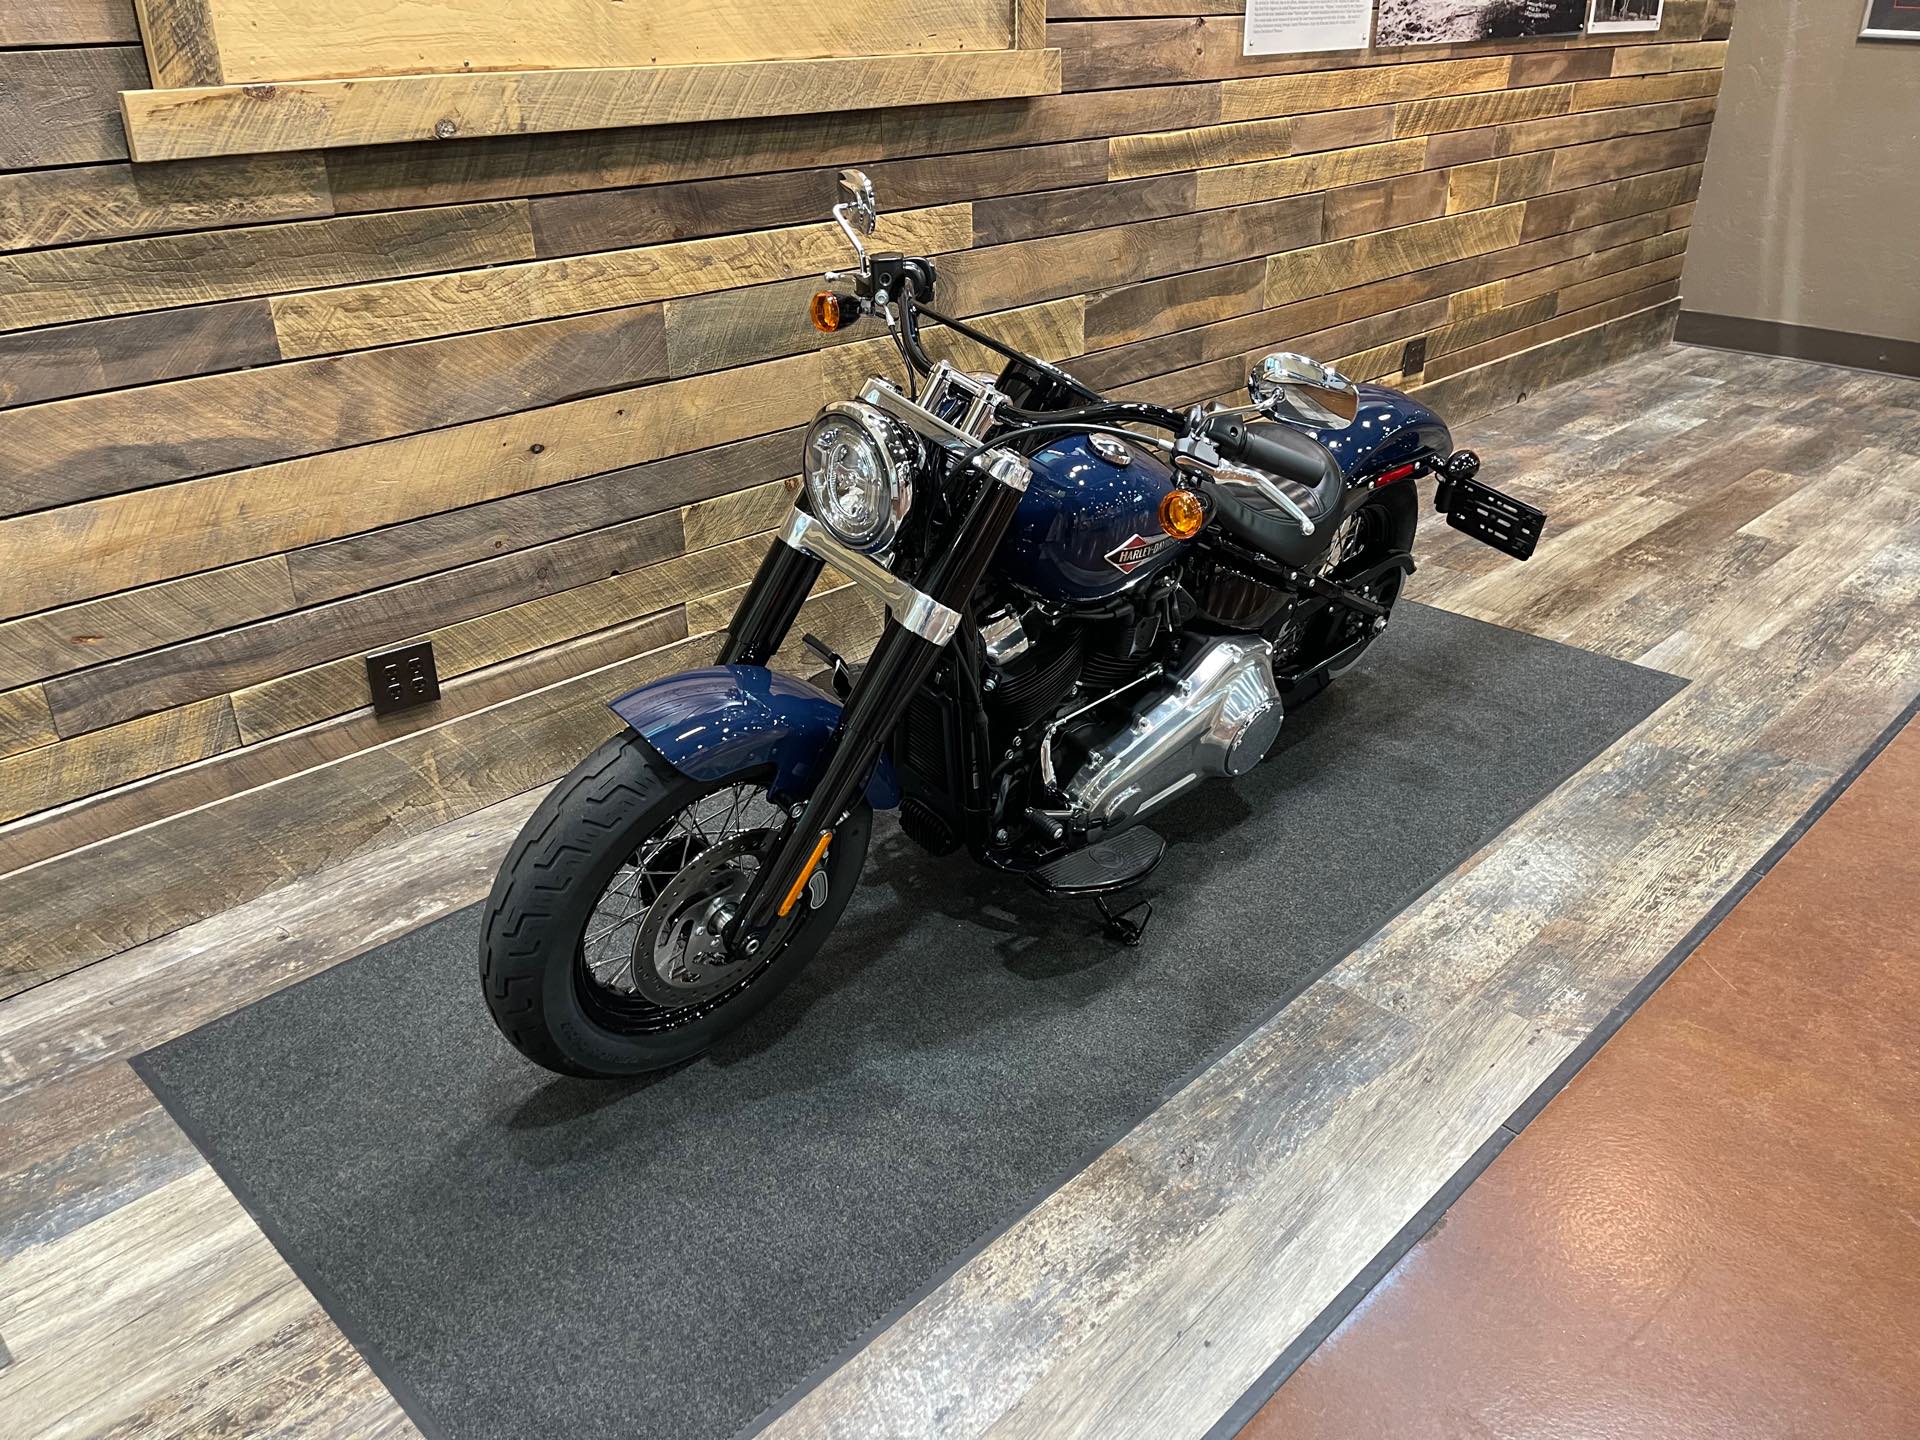 2019 Harley-Davidson Softail Slim at Bull Falls Harley-Davidson